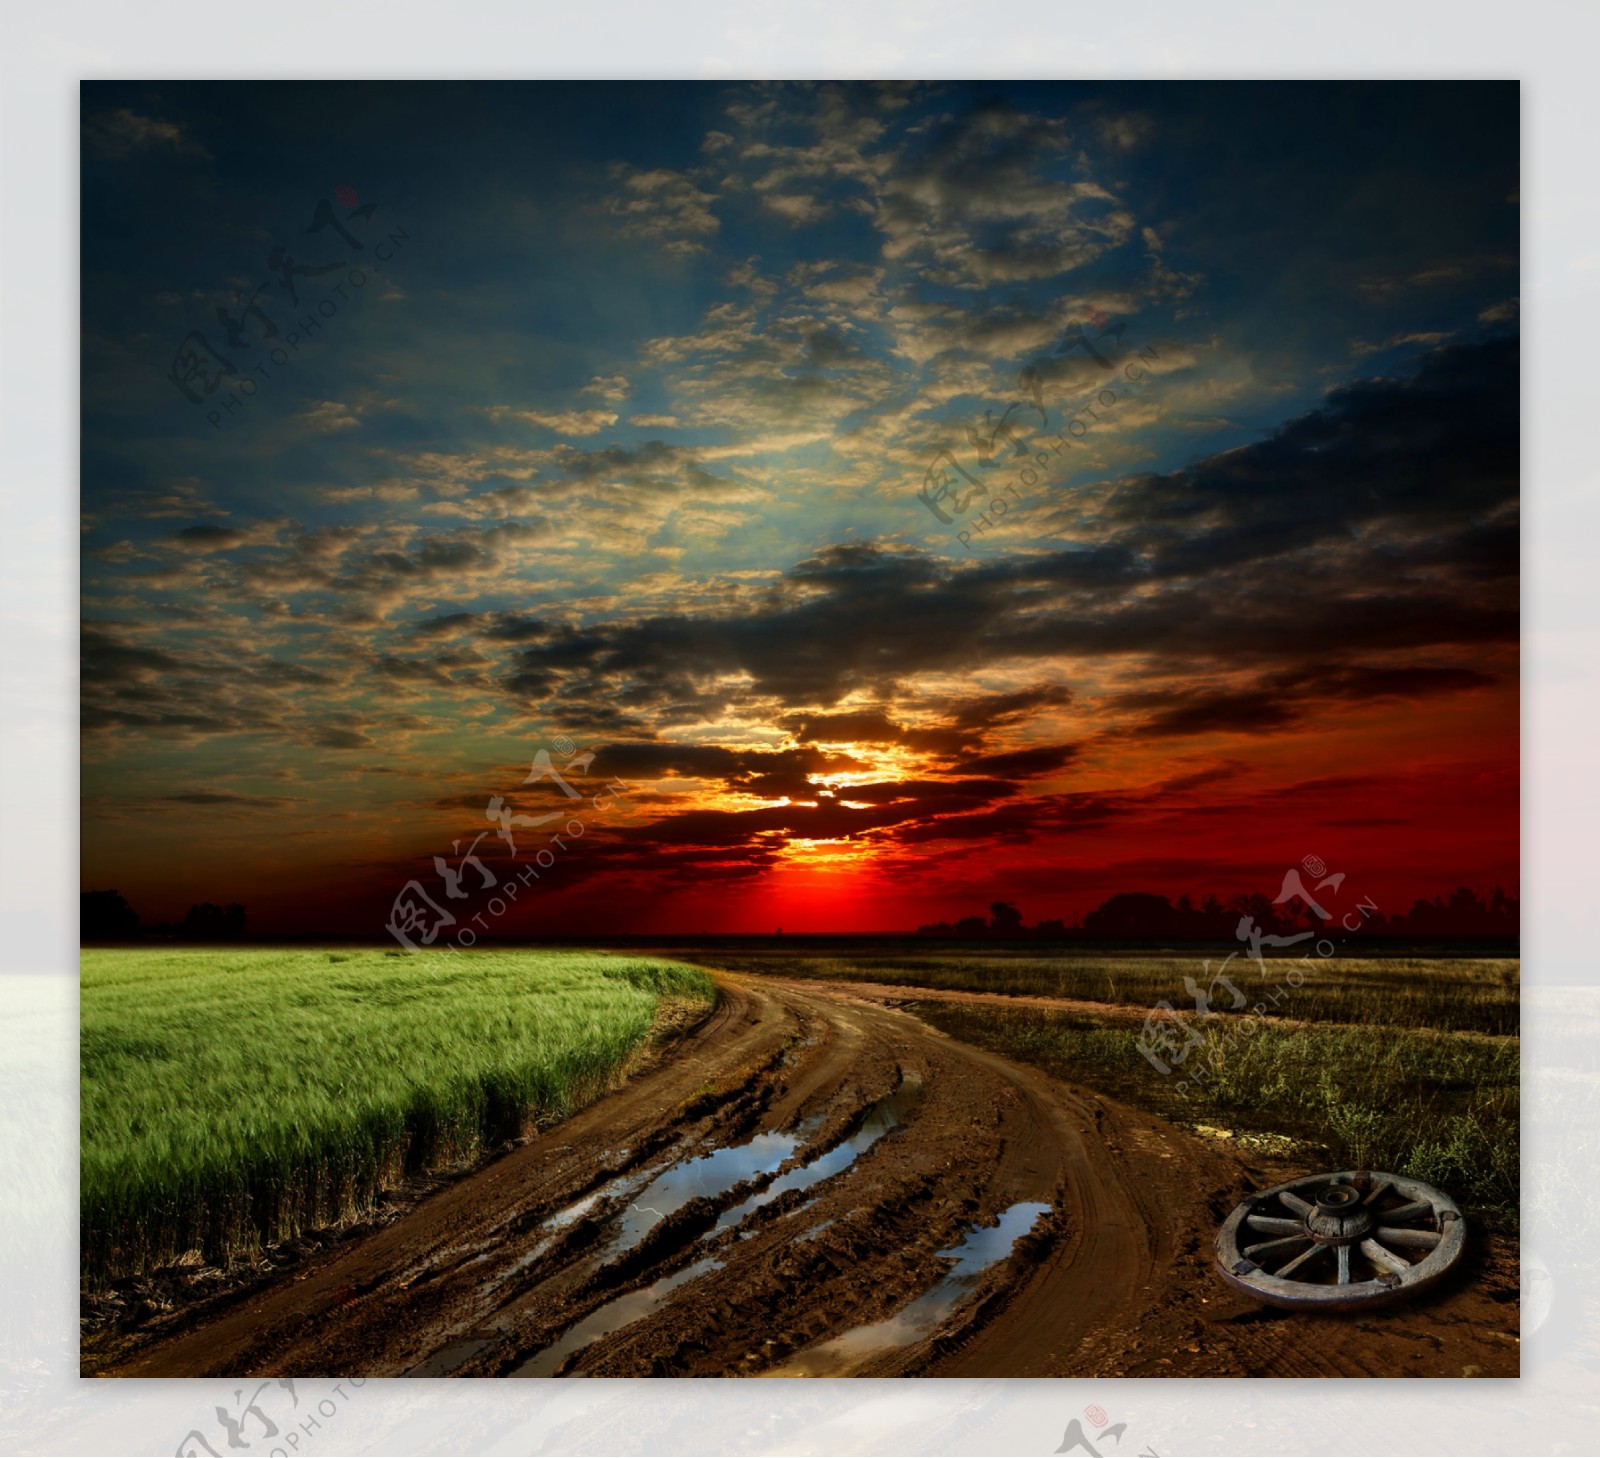 黄昏落日下的道路与麦田图片